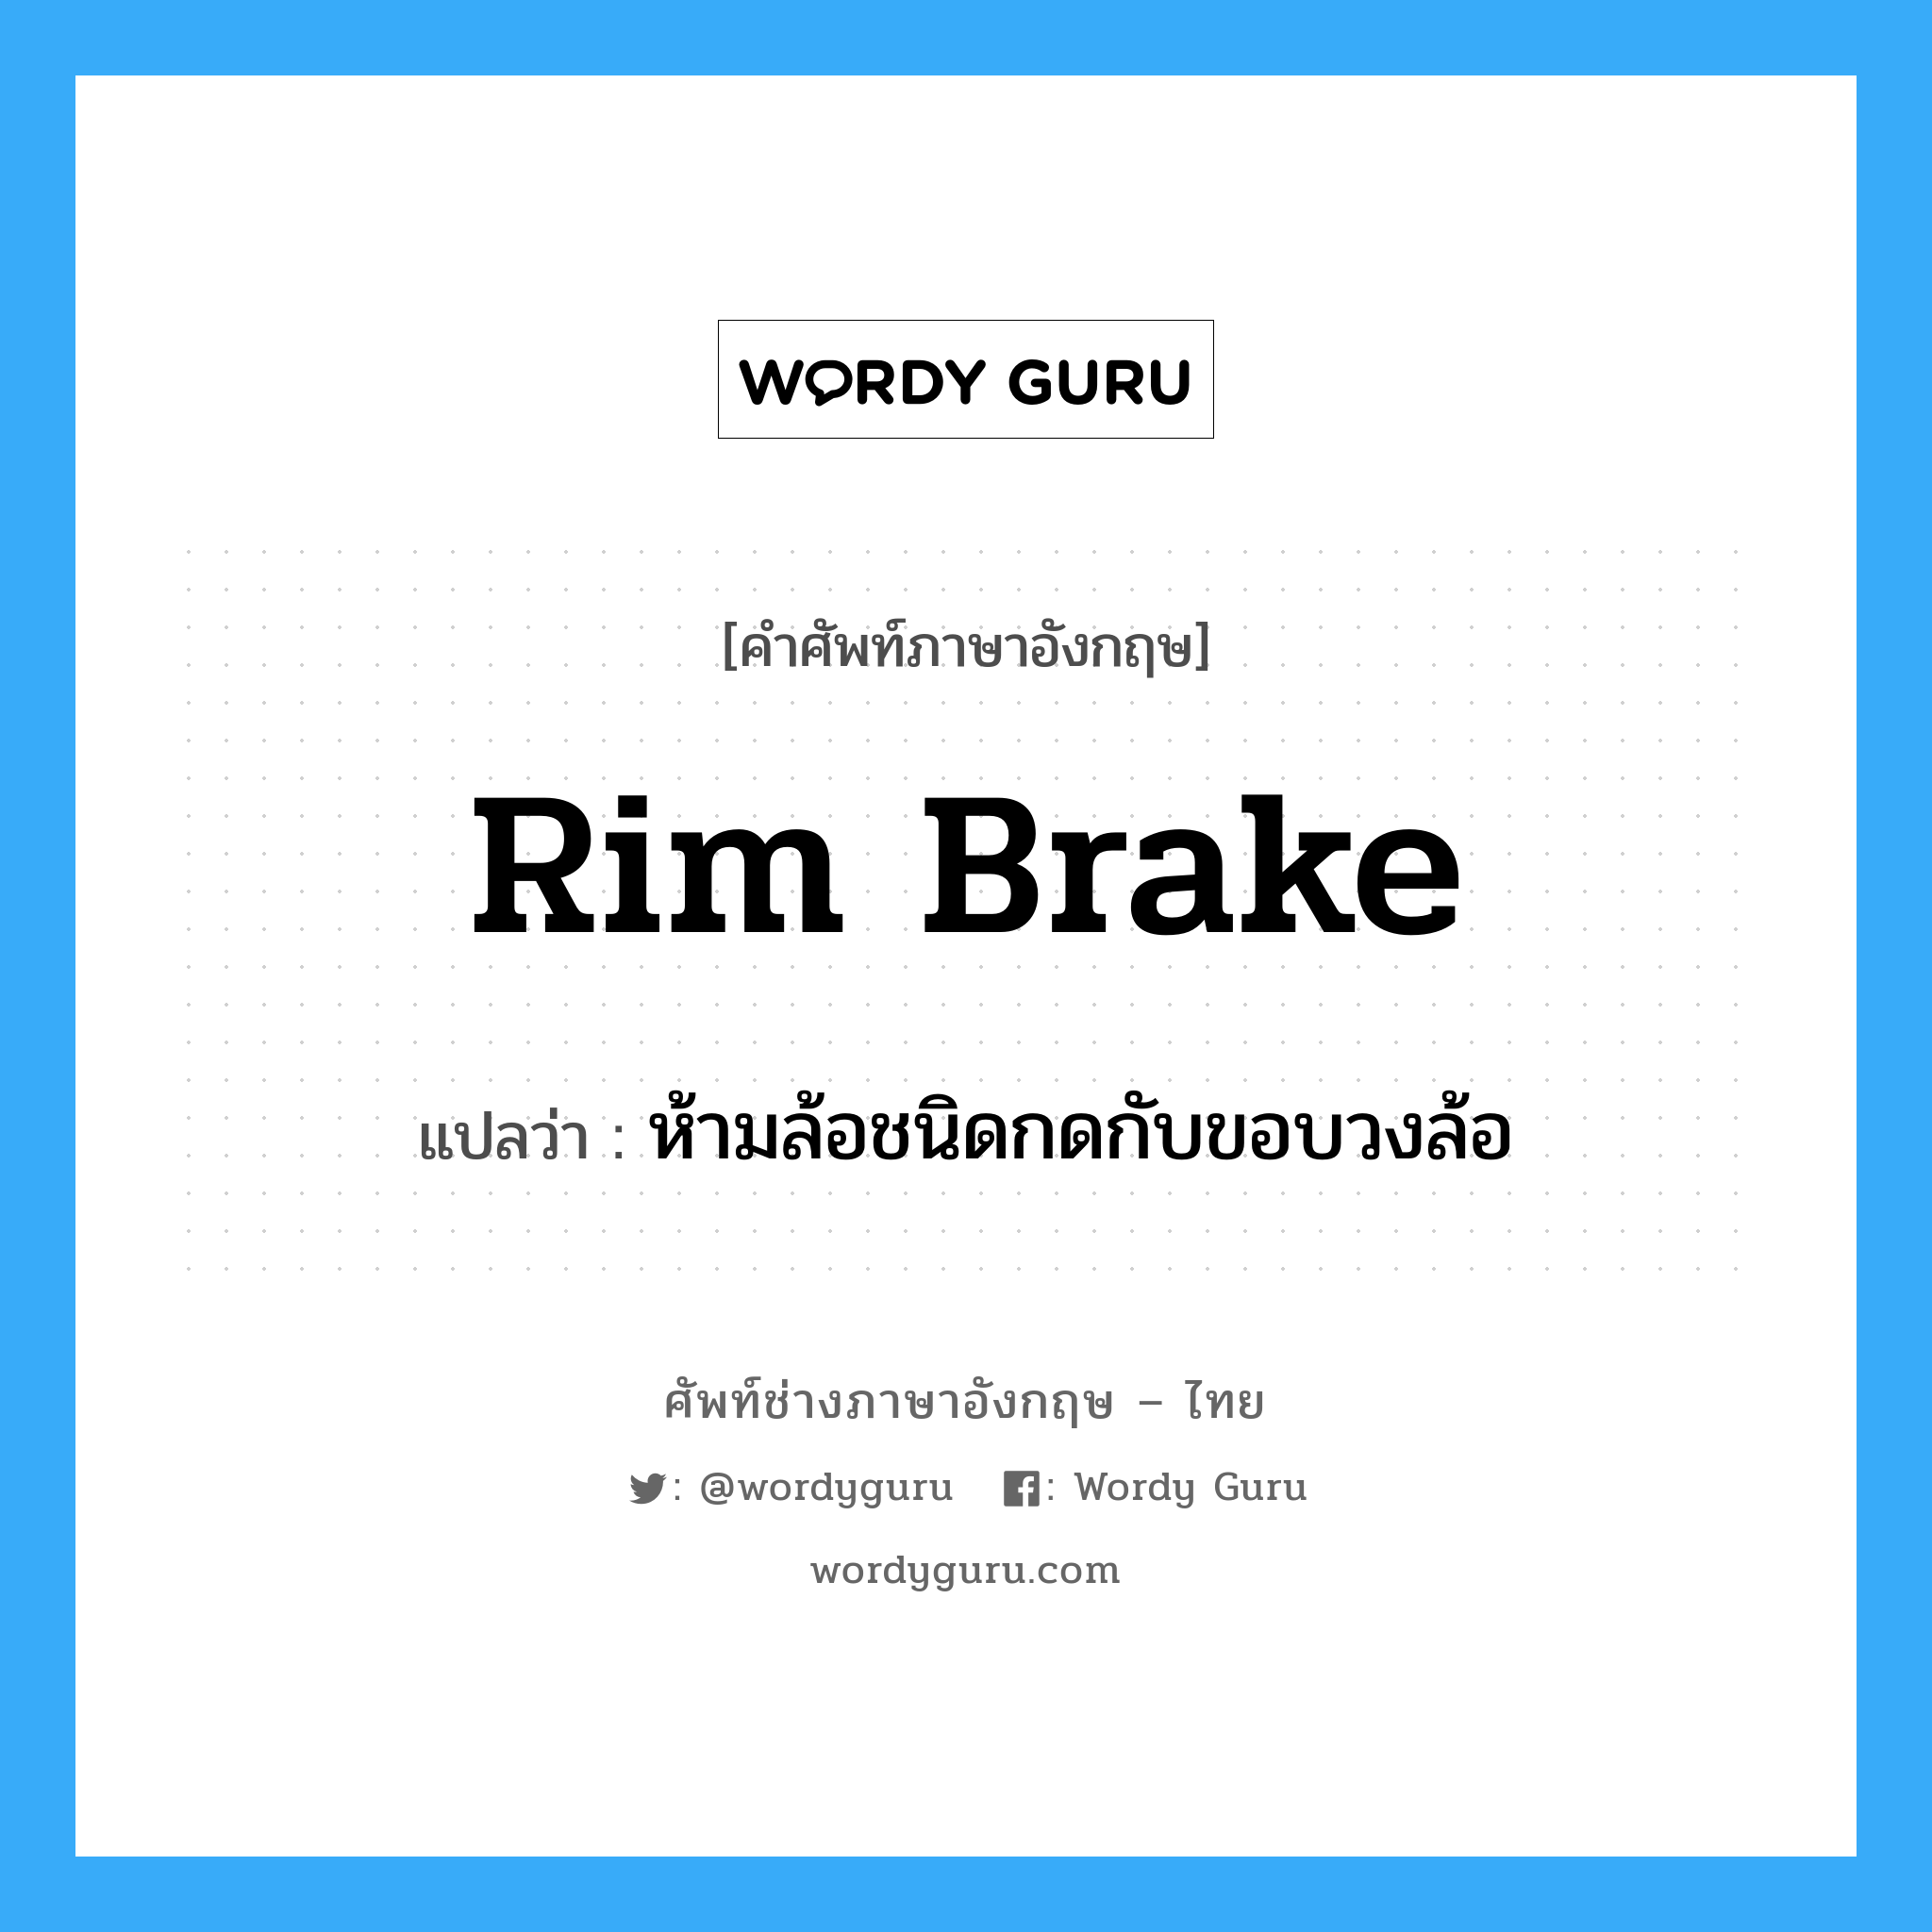 rim brake แปลว่า?, คำศัพท์ช่างภาษาอังกฤษ - ไทย rim brake คำศัพท์ภาษาอังกฤษ rim brake แปลว่า ห้ามล้อชนิดกดกับขอบวงล้อ